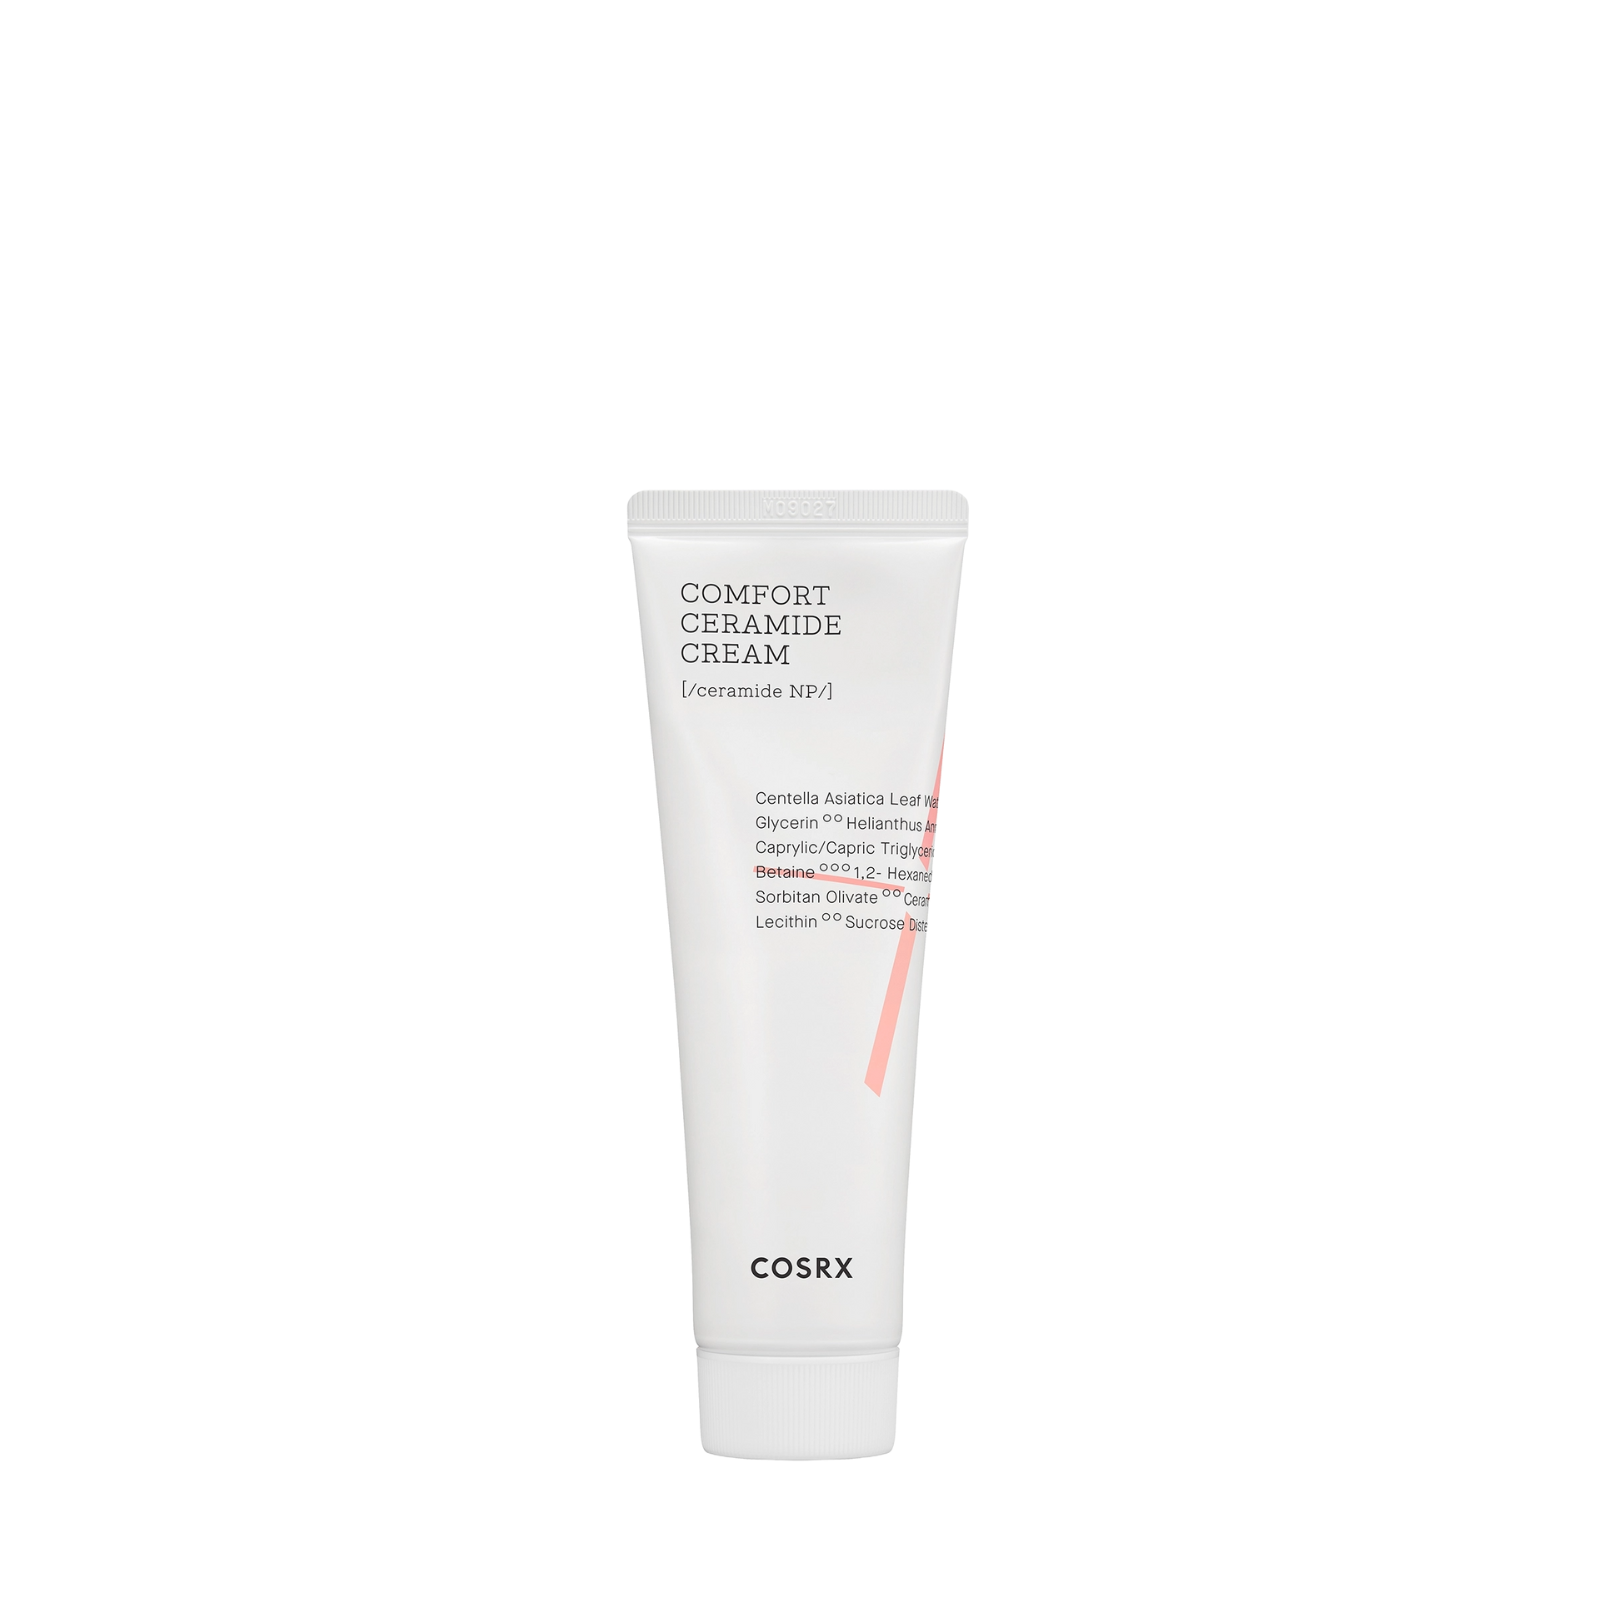 Face cream by Cosrx (Cosrx Balancium Comfort Ceramide Cream)